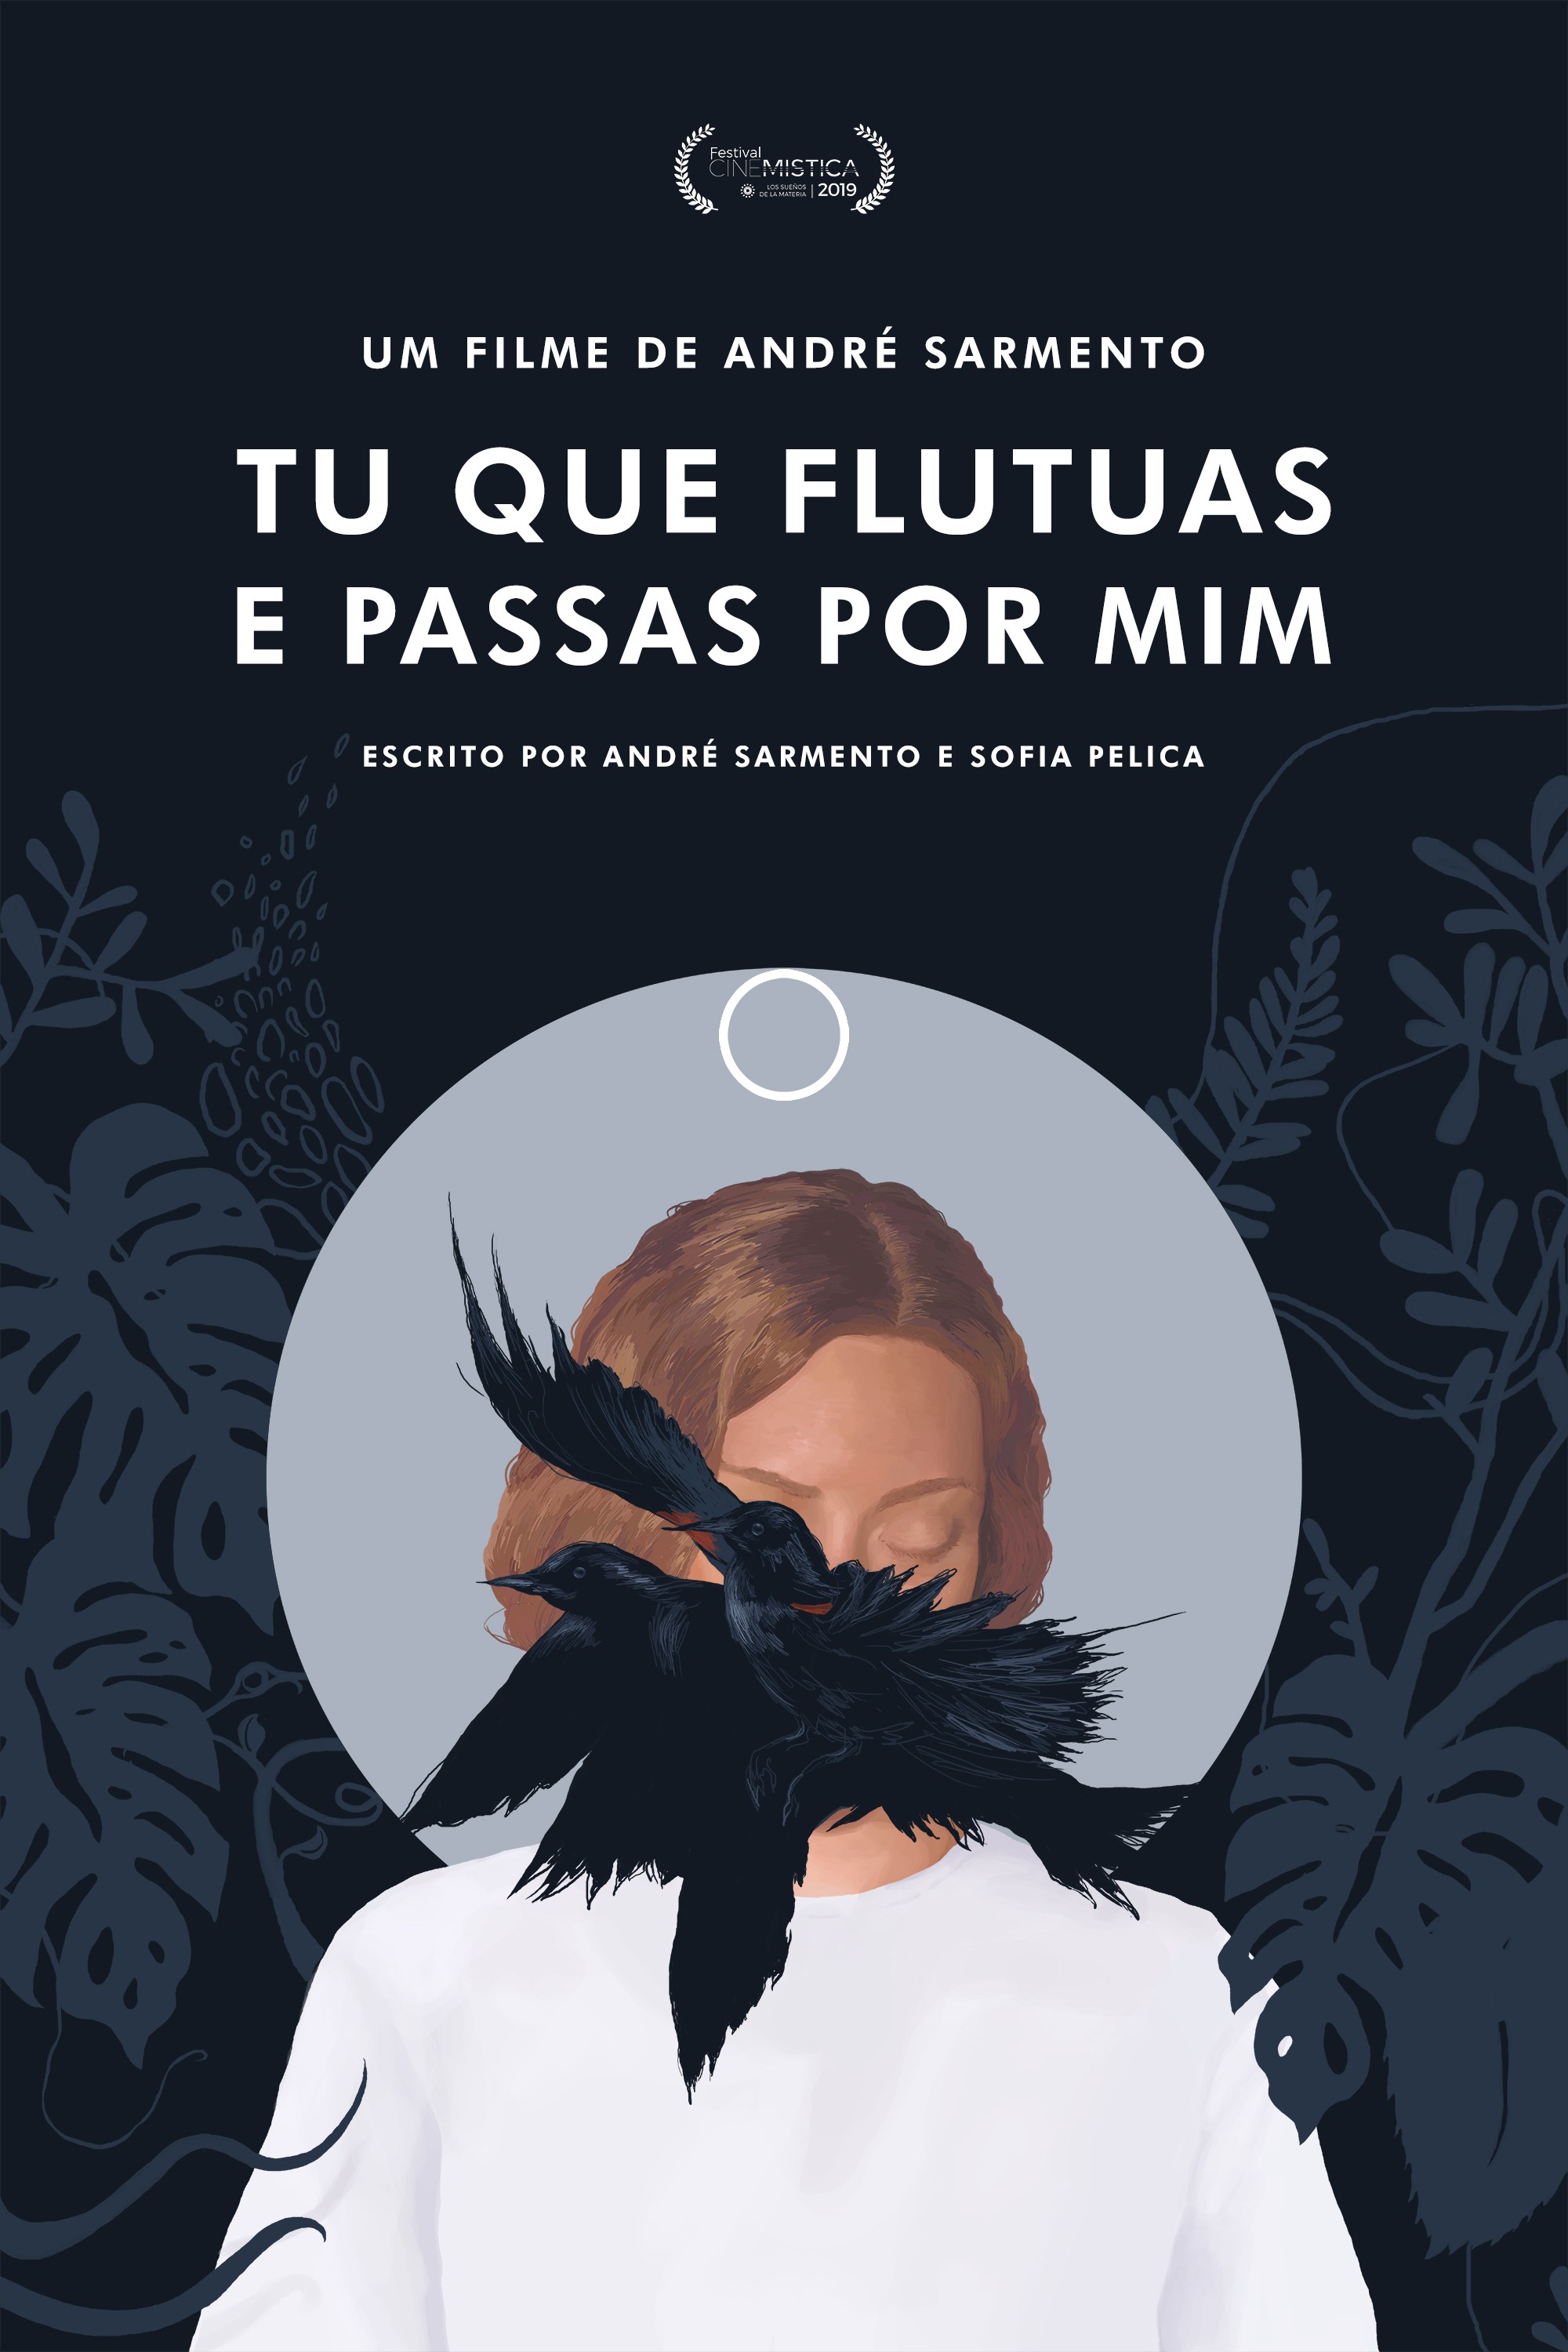 Mega Sized Movie Poster Image for Tu Que Flutuas e Passas Por Mim